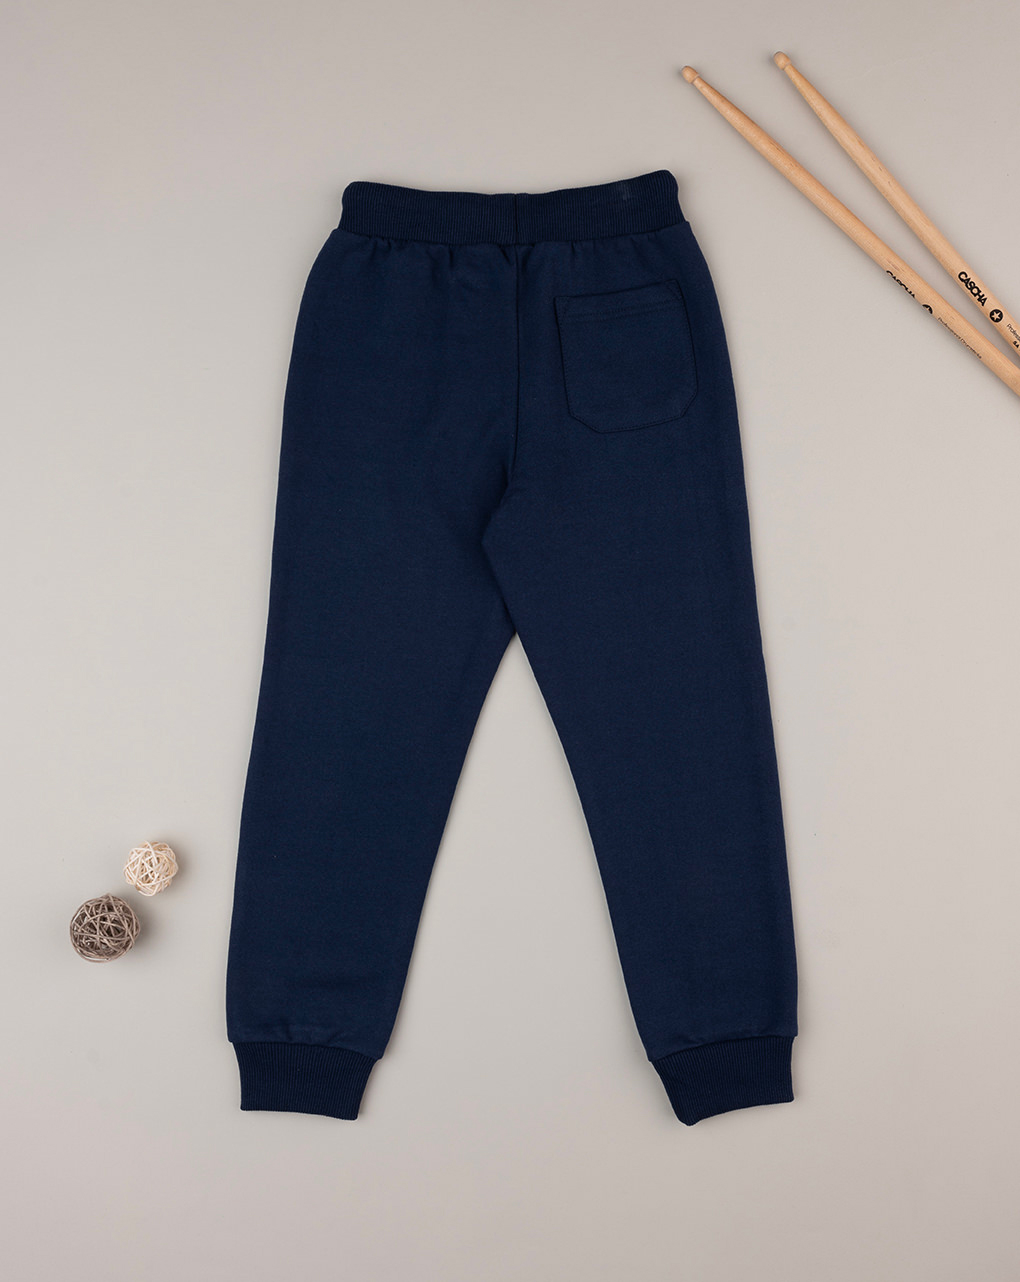 παιδικό παντελόνι φόρμας μπλε με αρκούδα για αγόρι - Prénatal